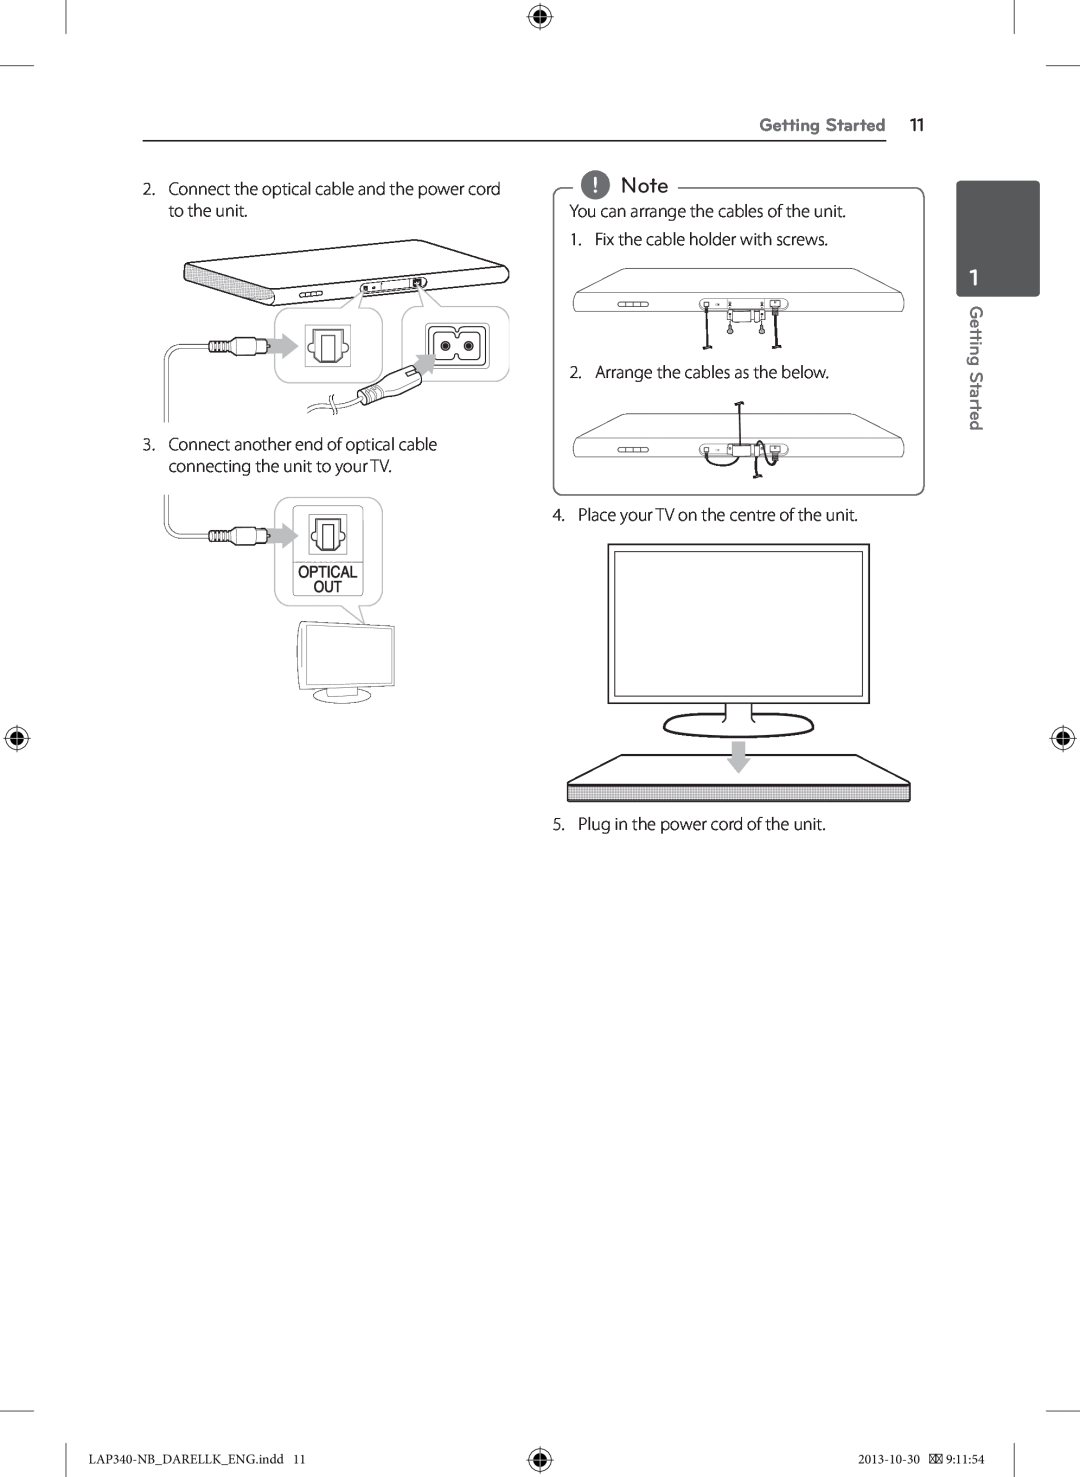 LG Electronics owner manual Getting Started, You can arrange, LAP340-NBDARELLKENG.indd, 2013-10-30, GettingStarted 